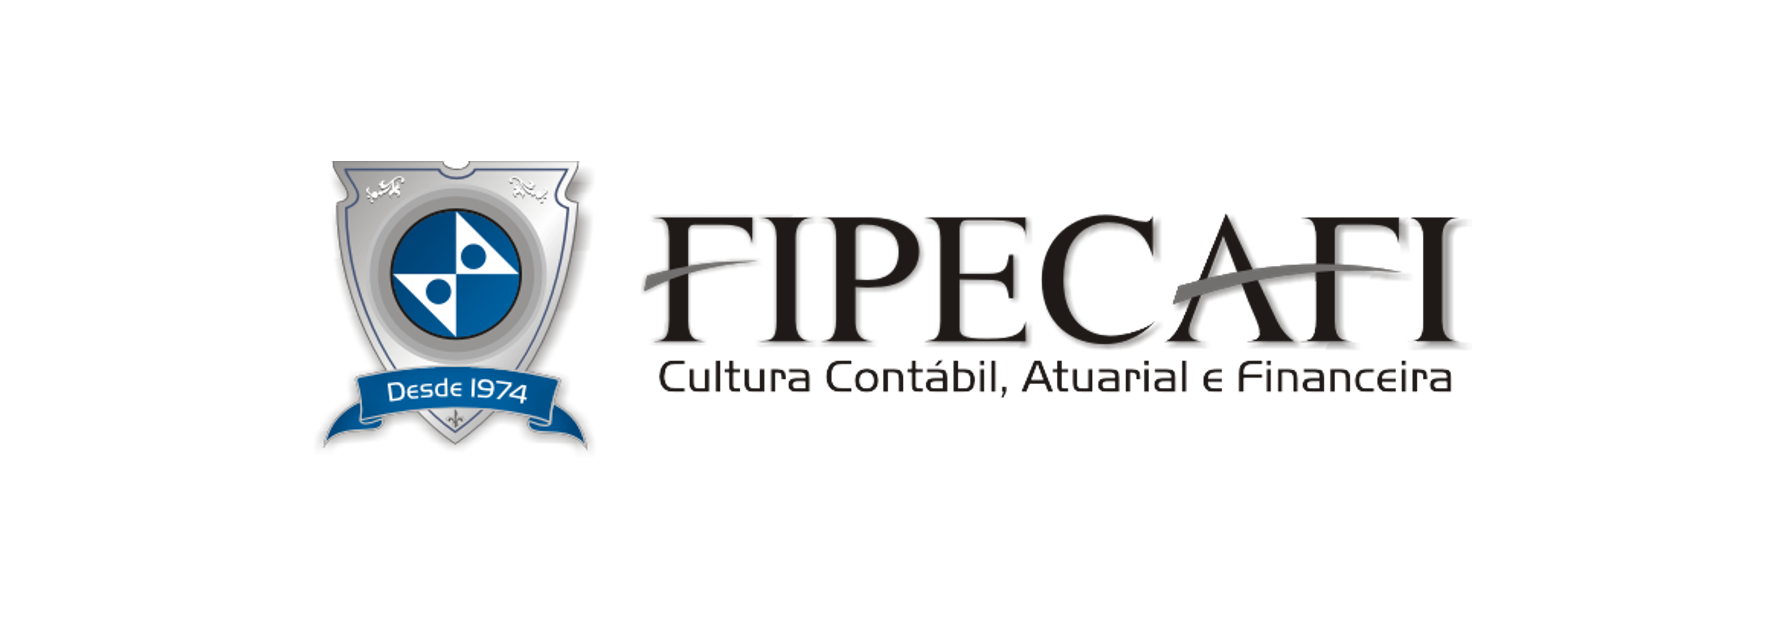 FIPECAFI  MBA Controller da FIPECAFI Contará com a Assetz na Carga Horária  Semestral do Curso - Assetz